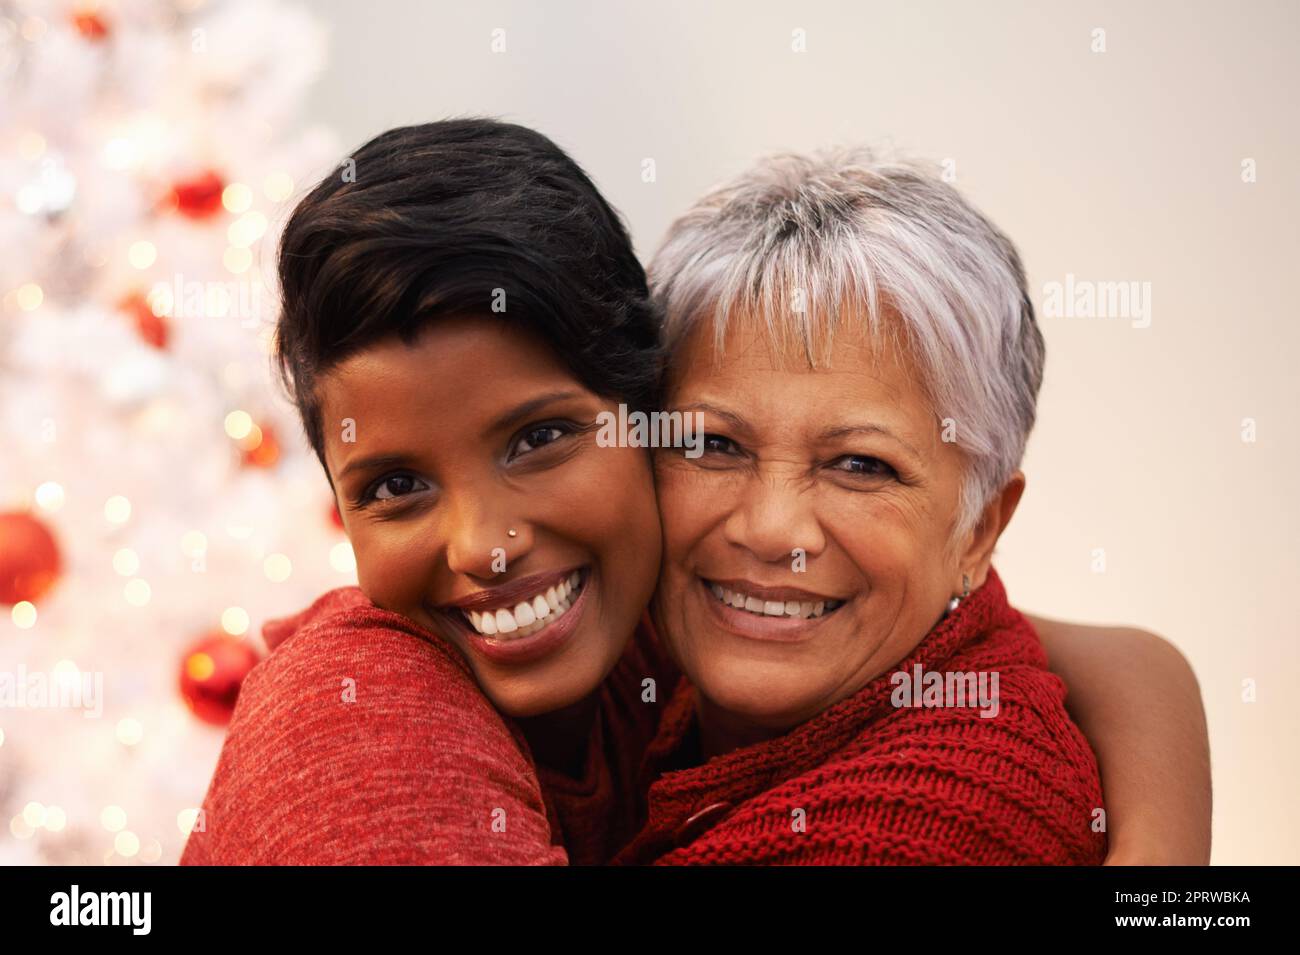 Tempo di qualità a Natale. Una donna anziana che riceve un abbraccio da sua figlia il Natale. Foto Stock